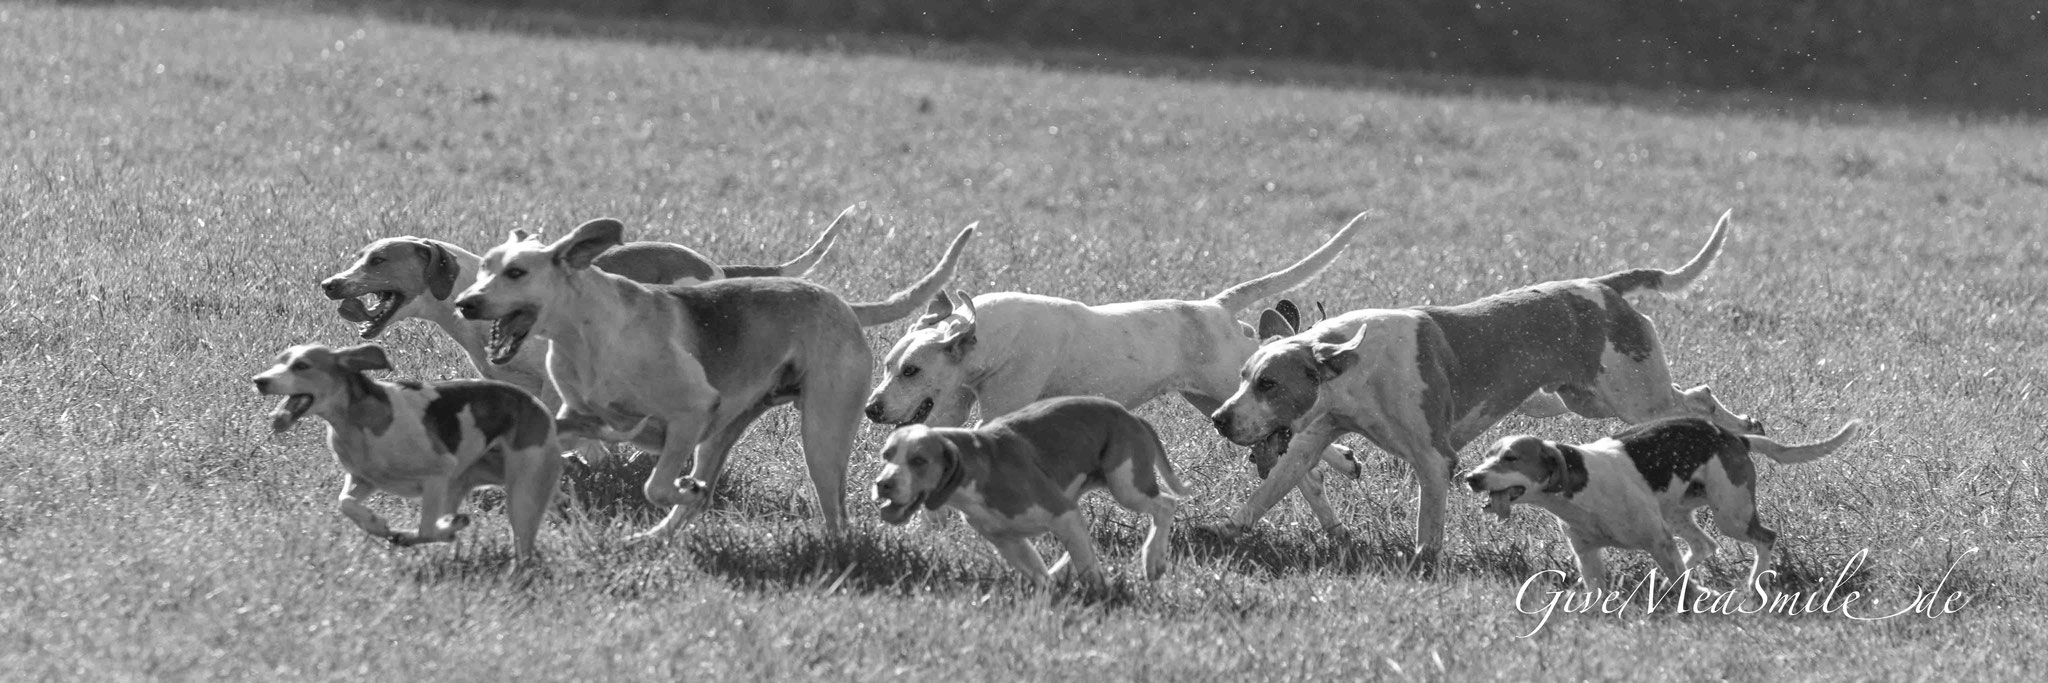 Jagdfotos vom Team @Givemeasmile.de auf der Fotojagd, Peter Jäger  #SchlossFasanerie #Fulda #Eichenzell #jagdreiterfulda #givemeasmilede #taunusmeute #foxhounds #beagles #jagdreiten #schleppjagd